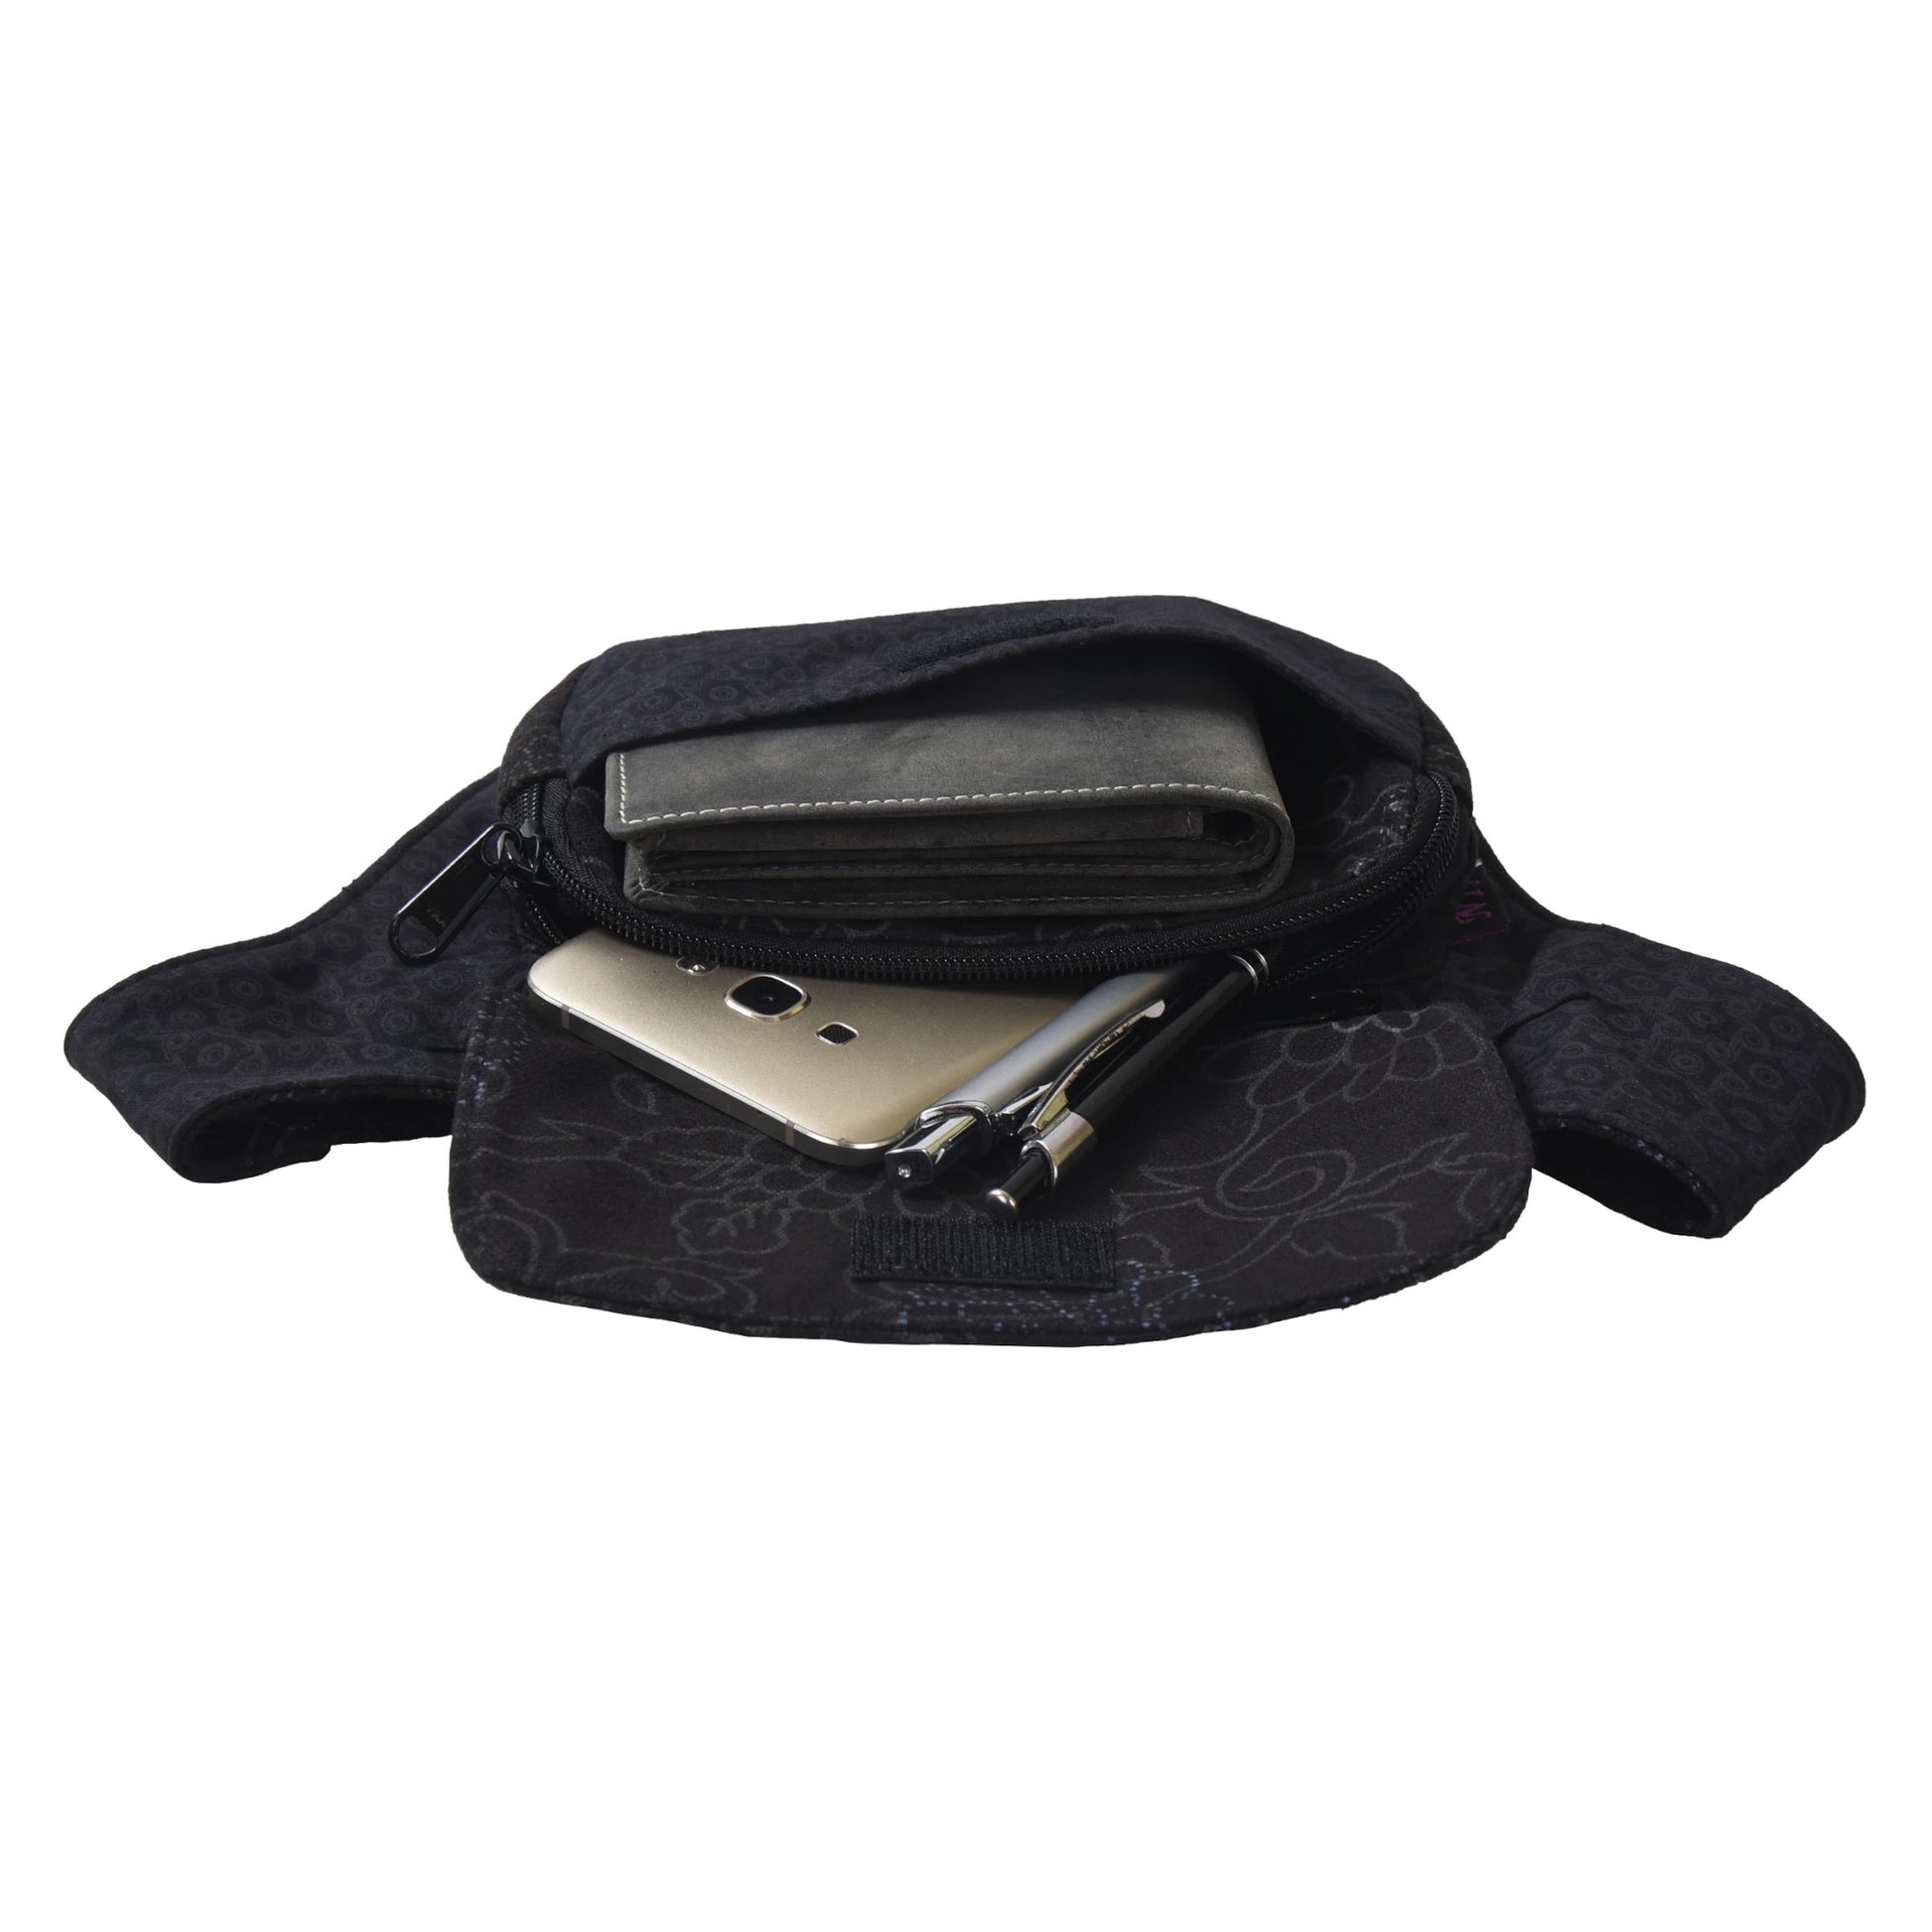 Bauchtasche Schwarz aus Stoff mit floralem Muster, zwei Reißverschlussfächer und Einsteckfach mit Platz für Portemonnaie und Handy.